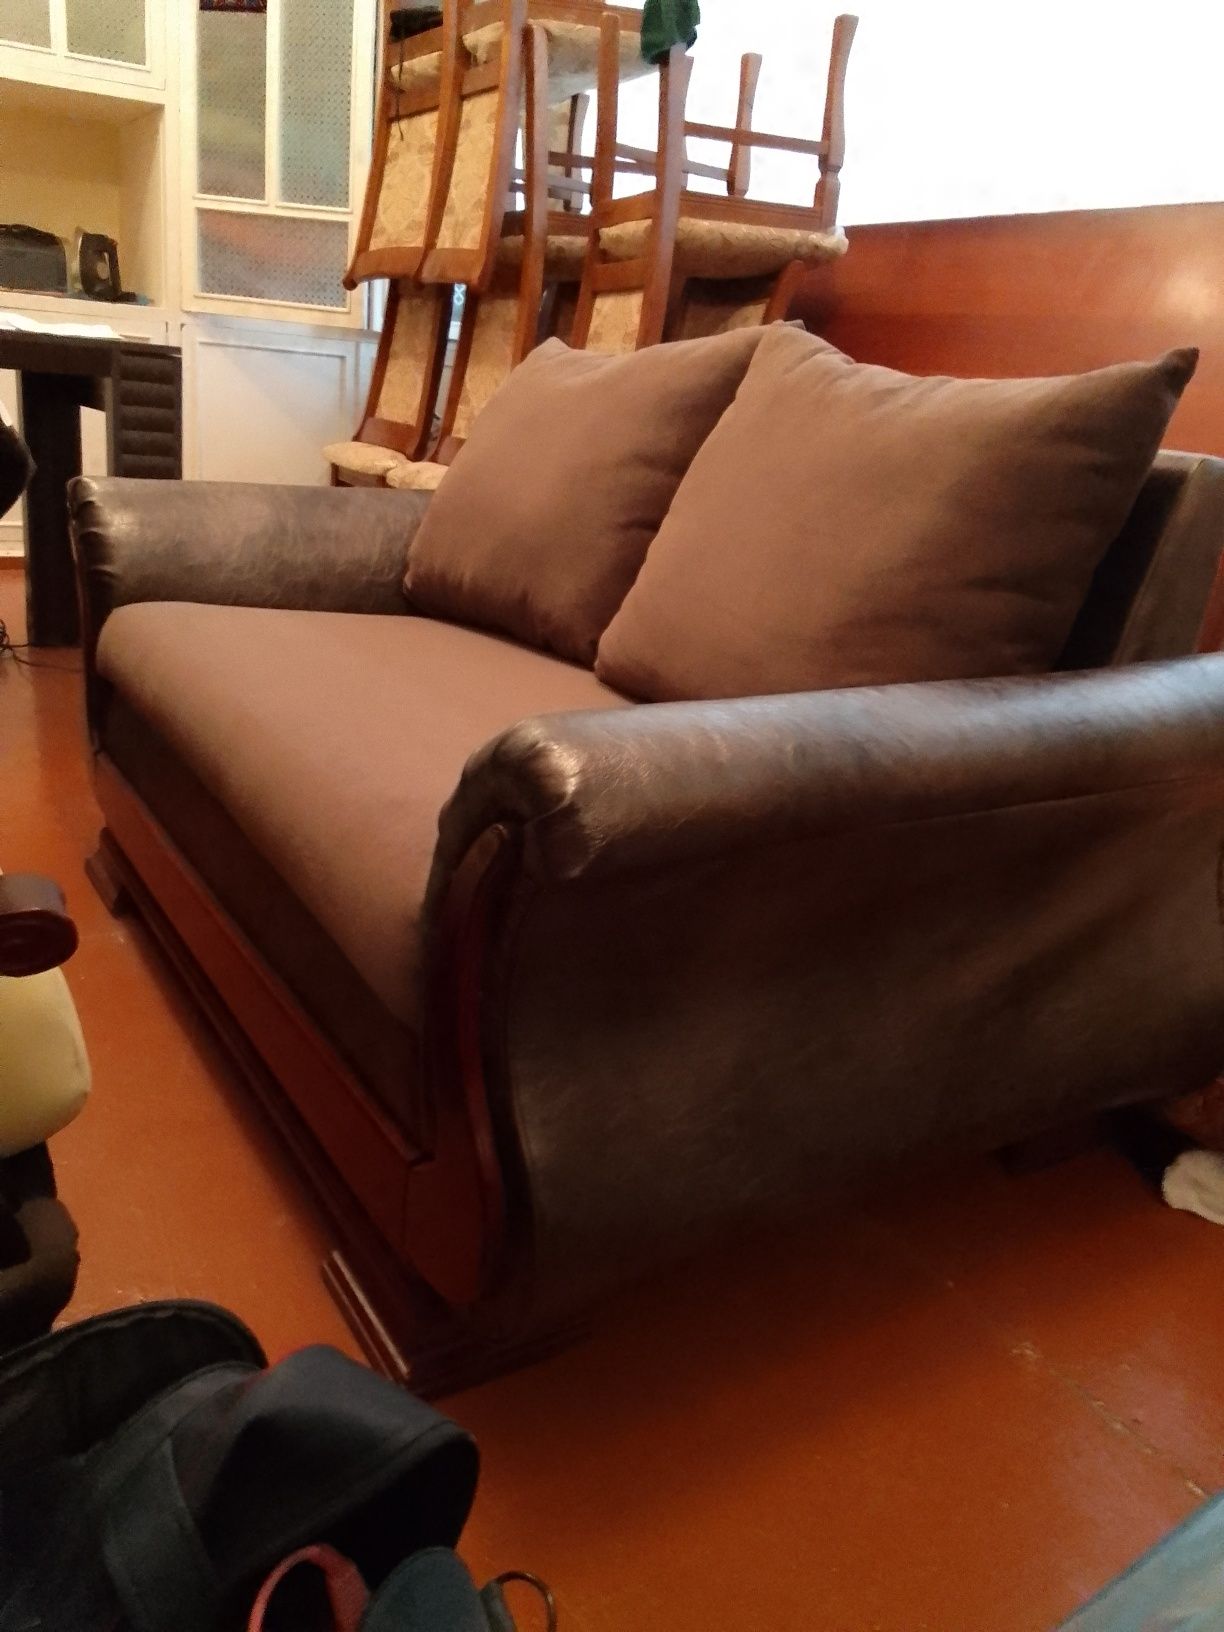 Продается Новый диван 140см*80см.